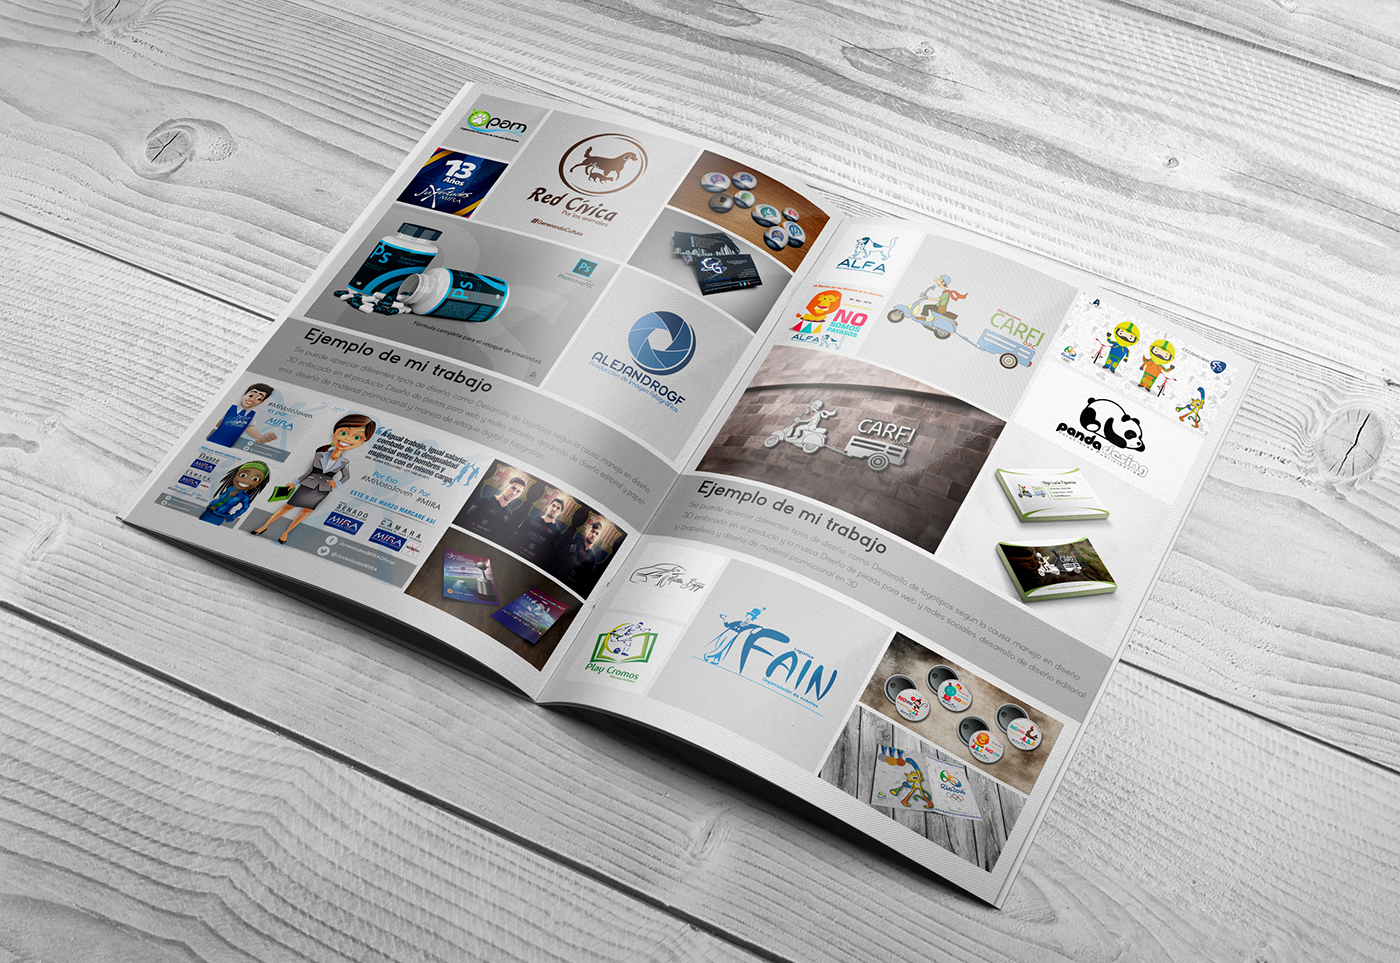 photoshop Illustrator InDesign CV Plan de estudios portafolio diseño gráfico diseño adobe graphic